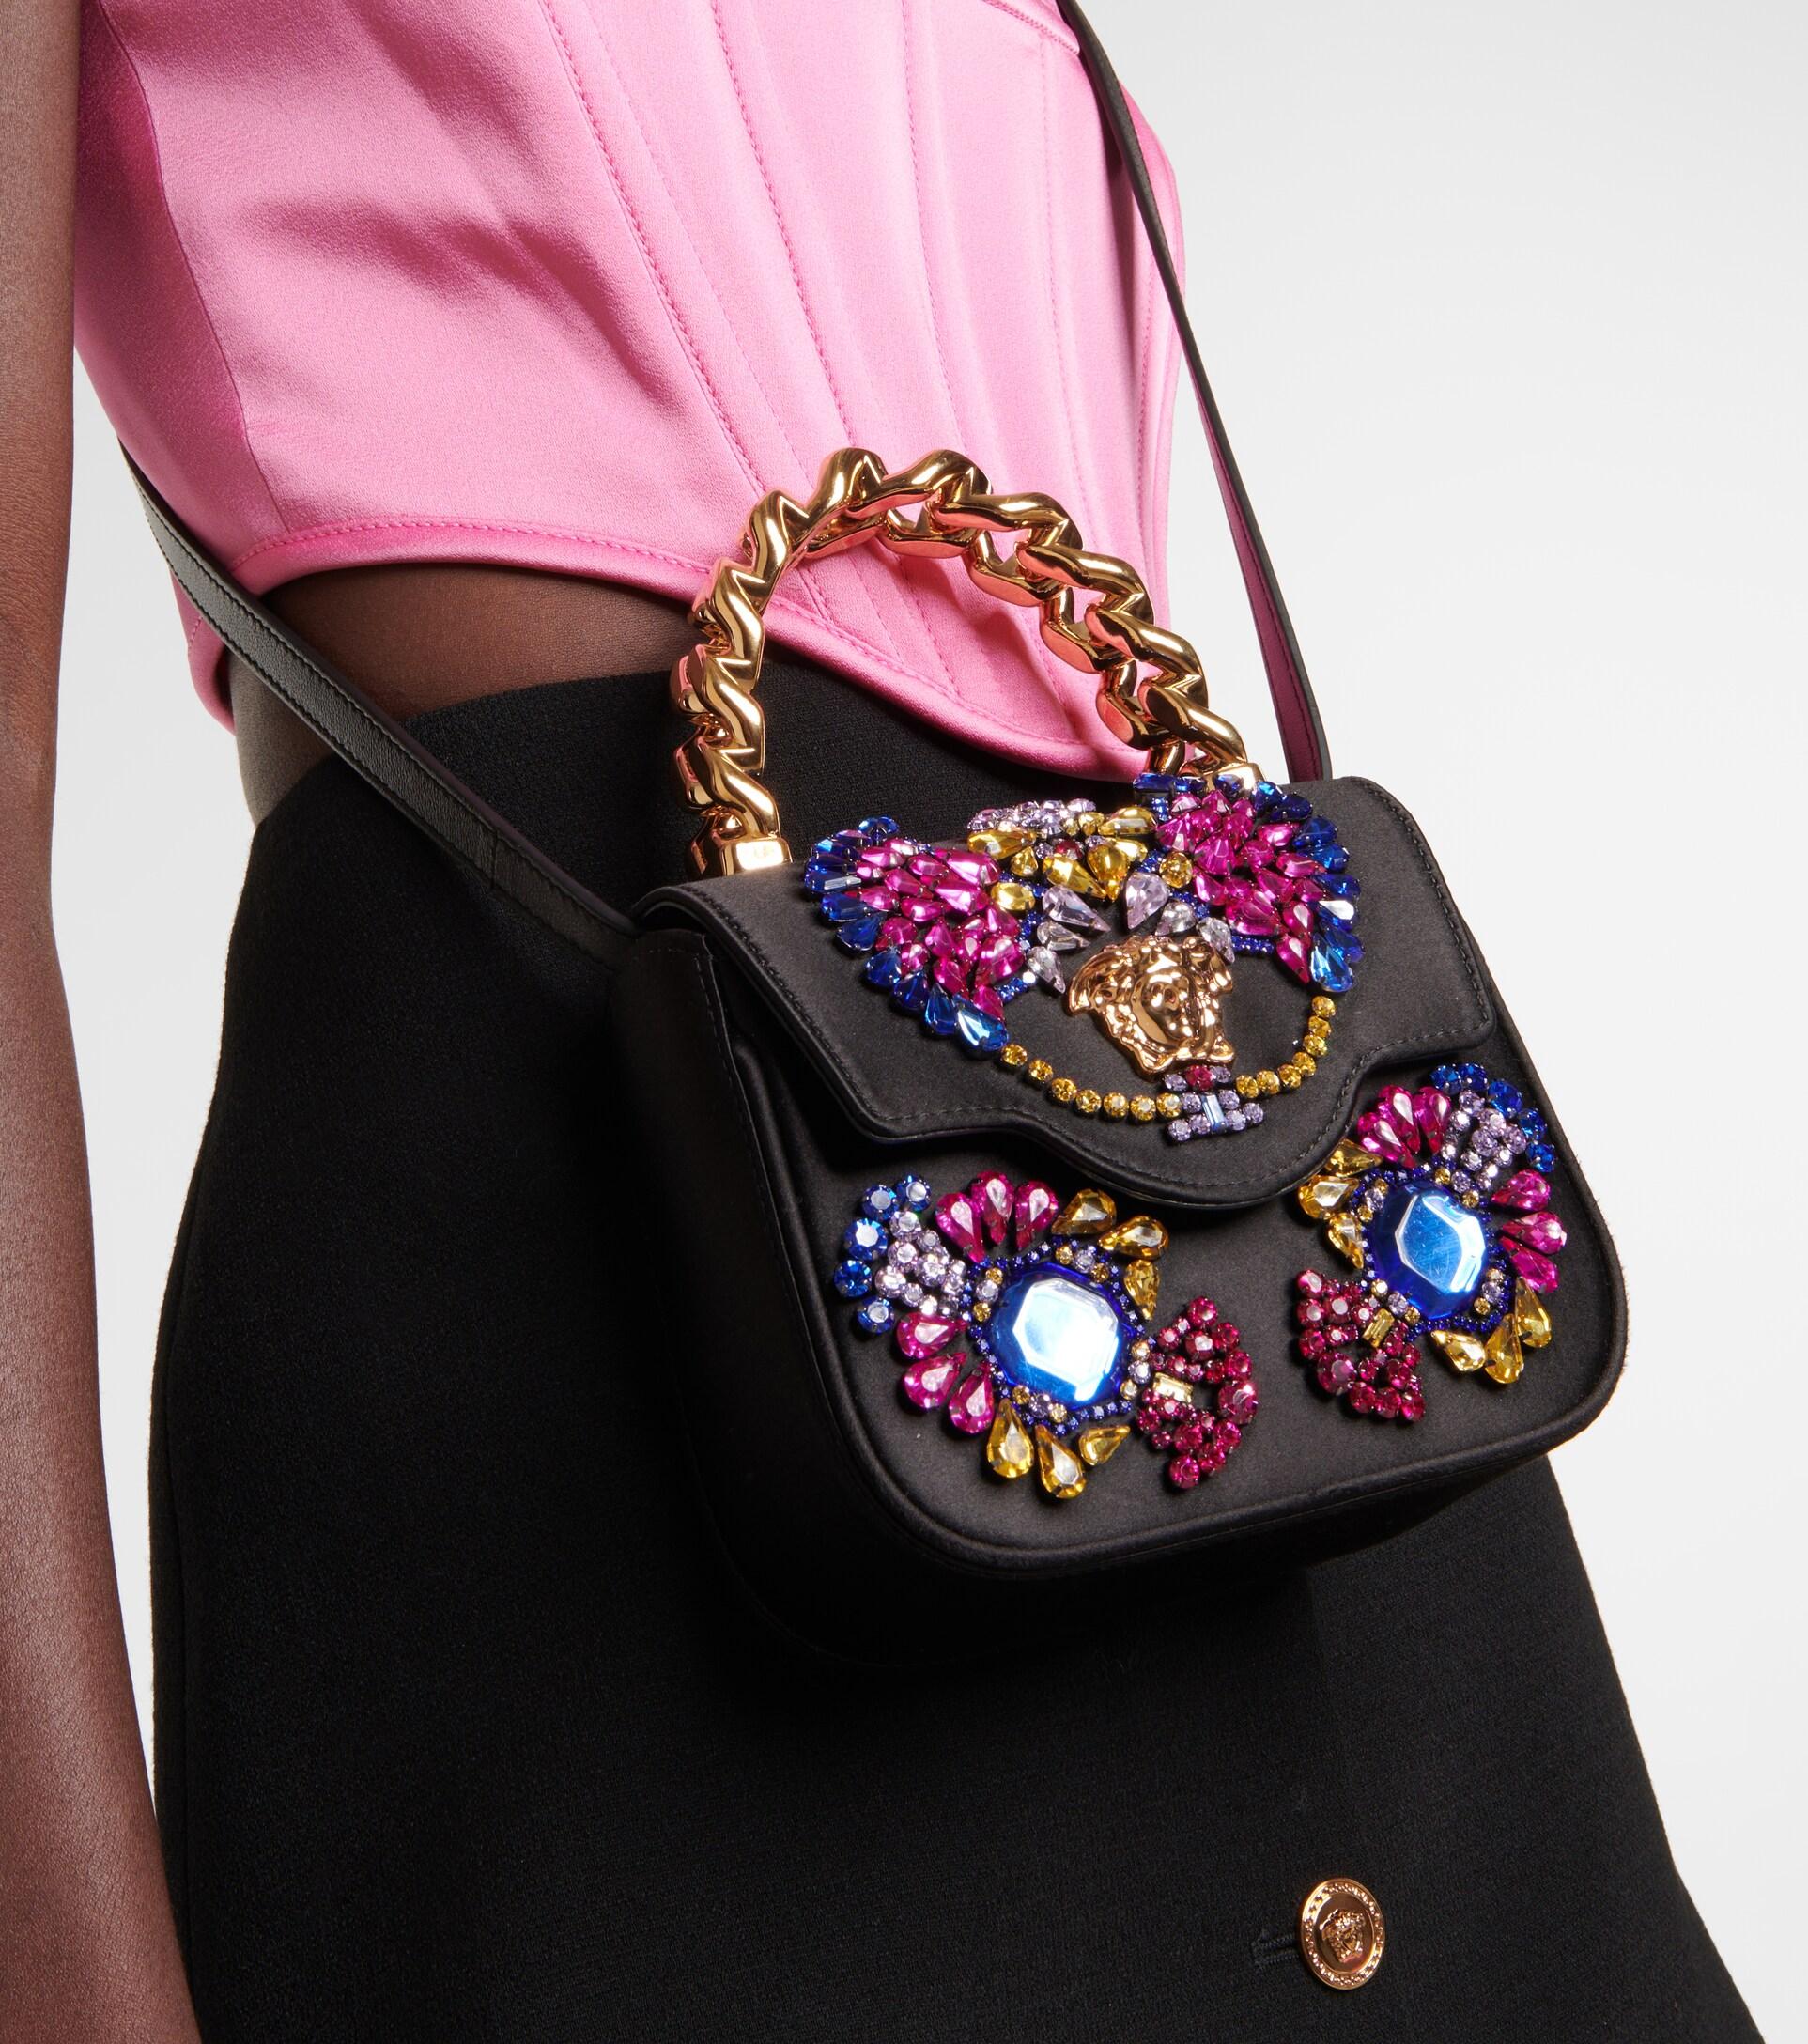 Women's La Medusa Handbag With Crystals by Versace